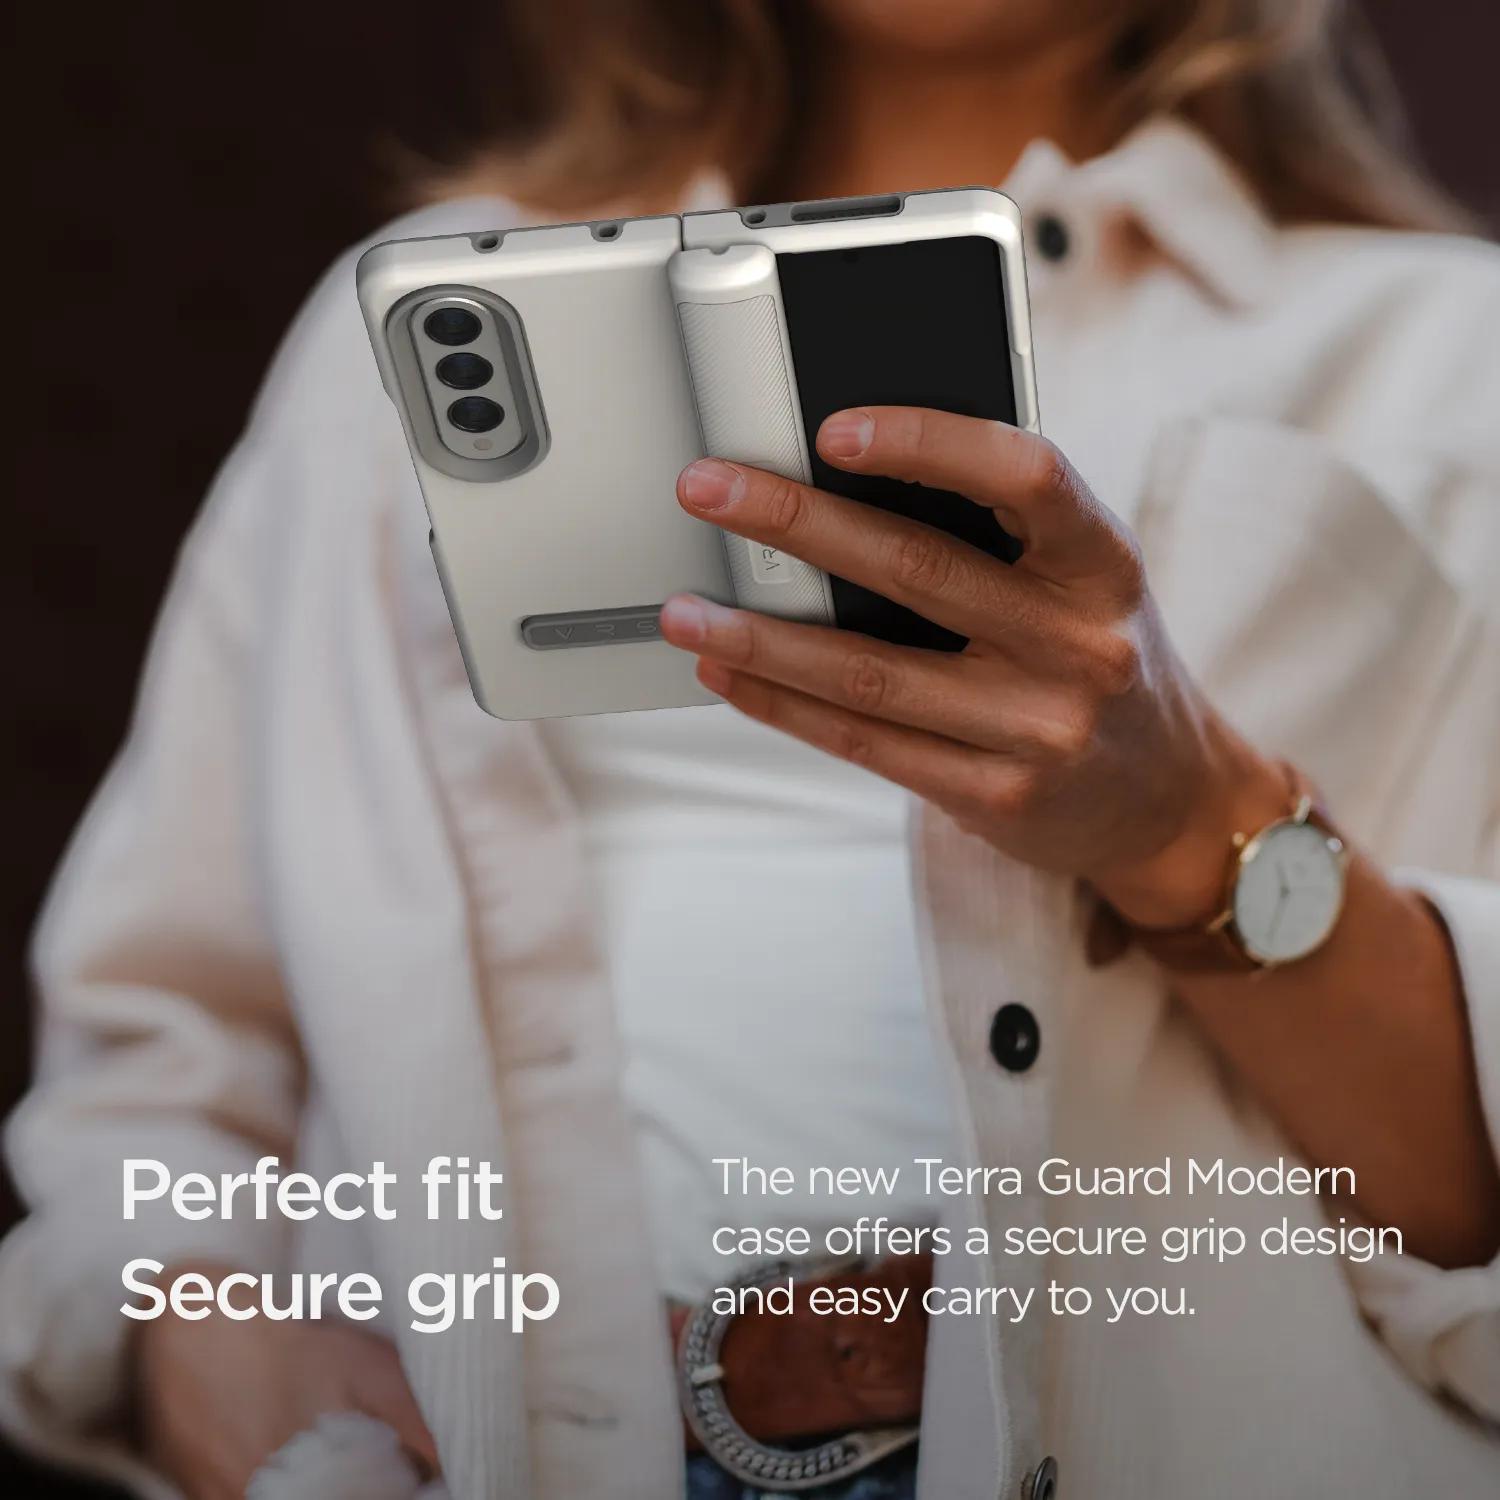 เคส VRS รุ่น Terra Guard Modern - Galaxy Z Fold 4 - สี Mint